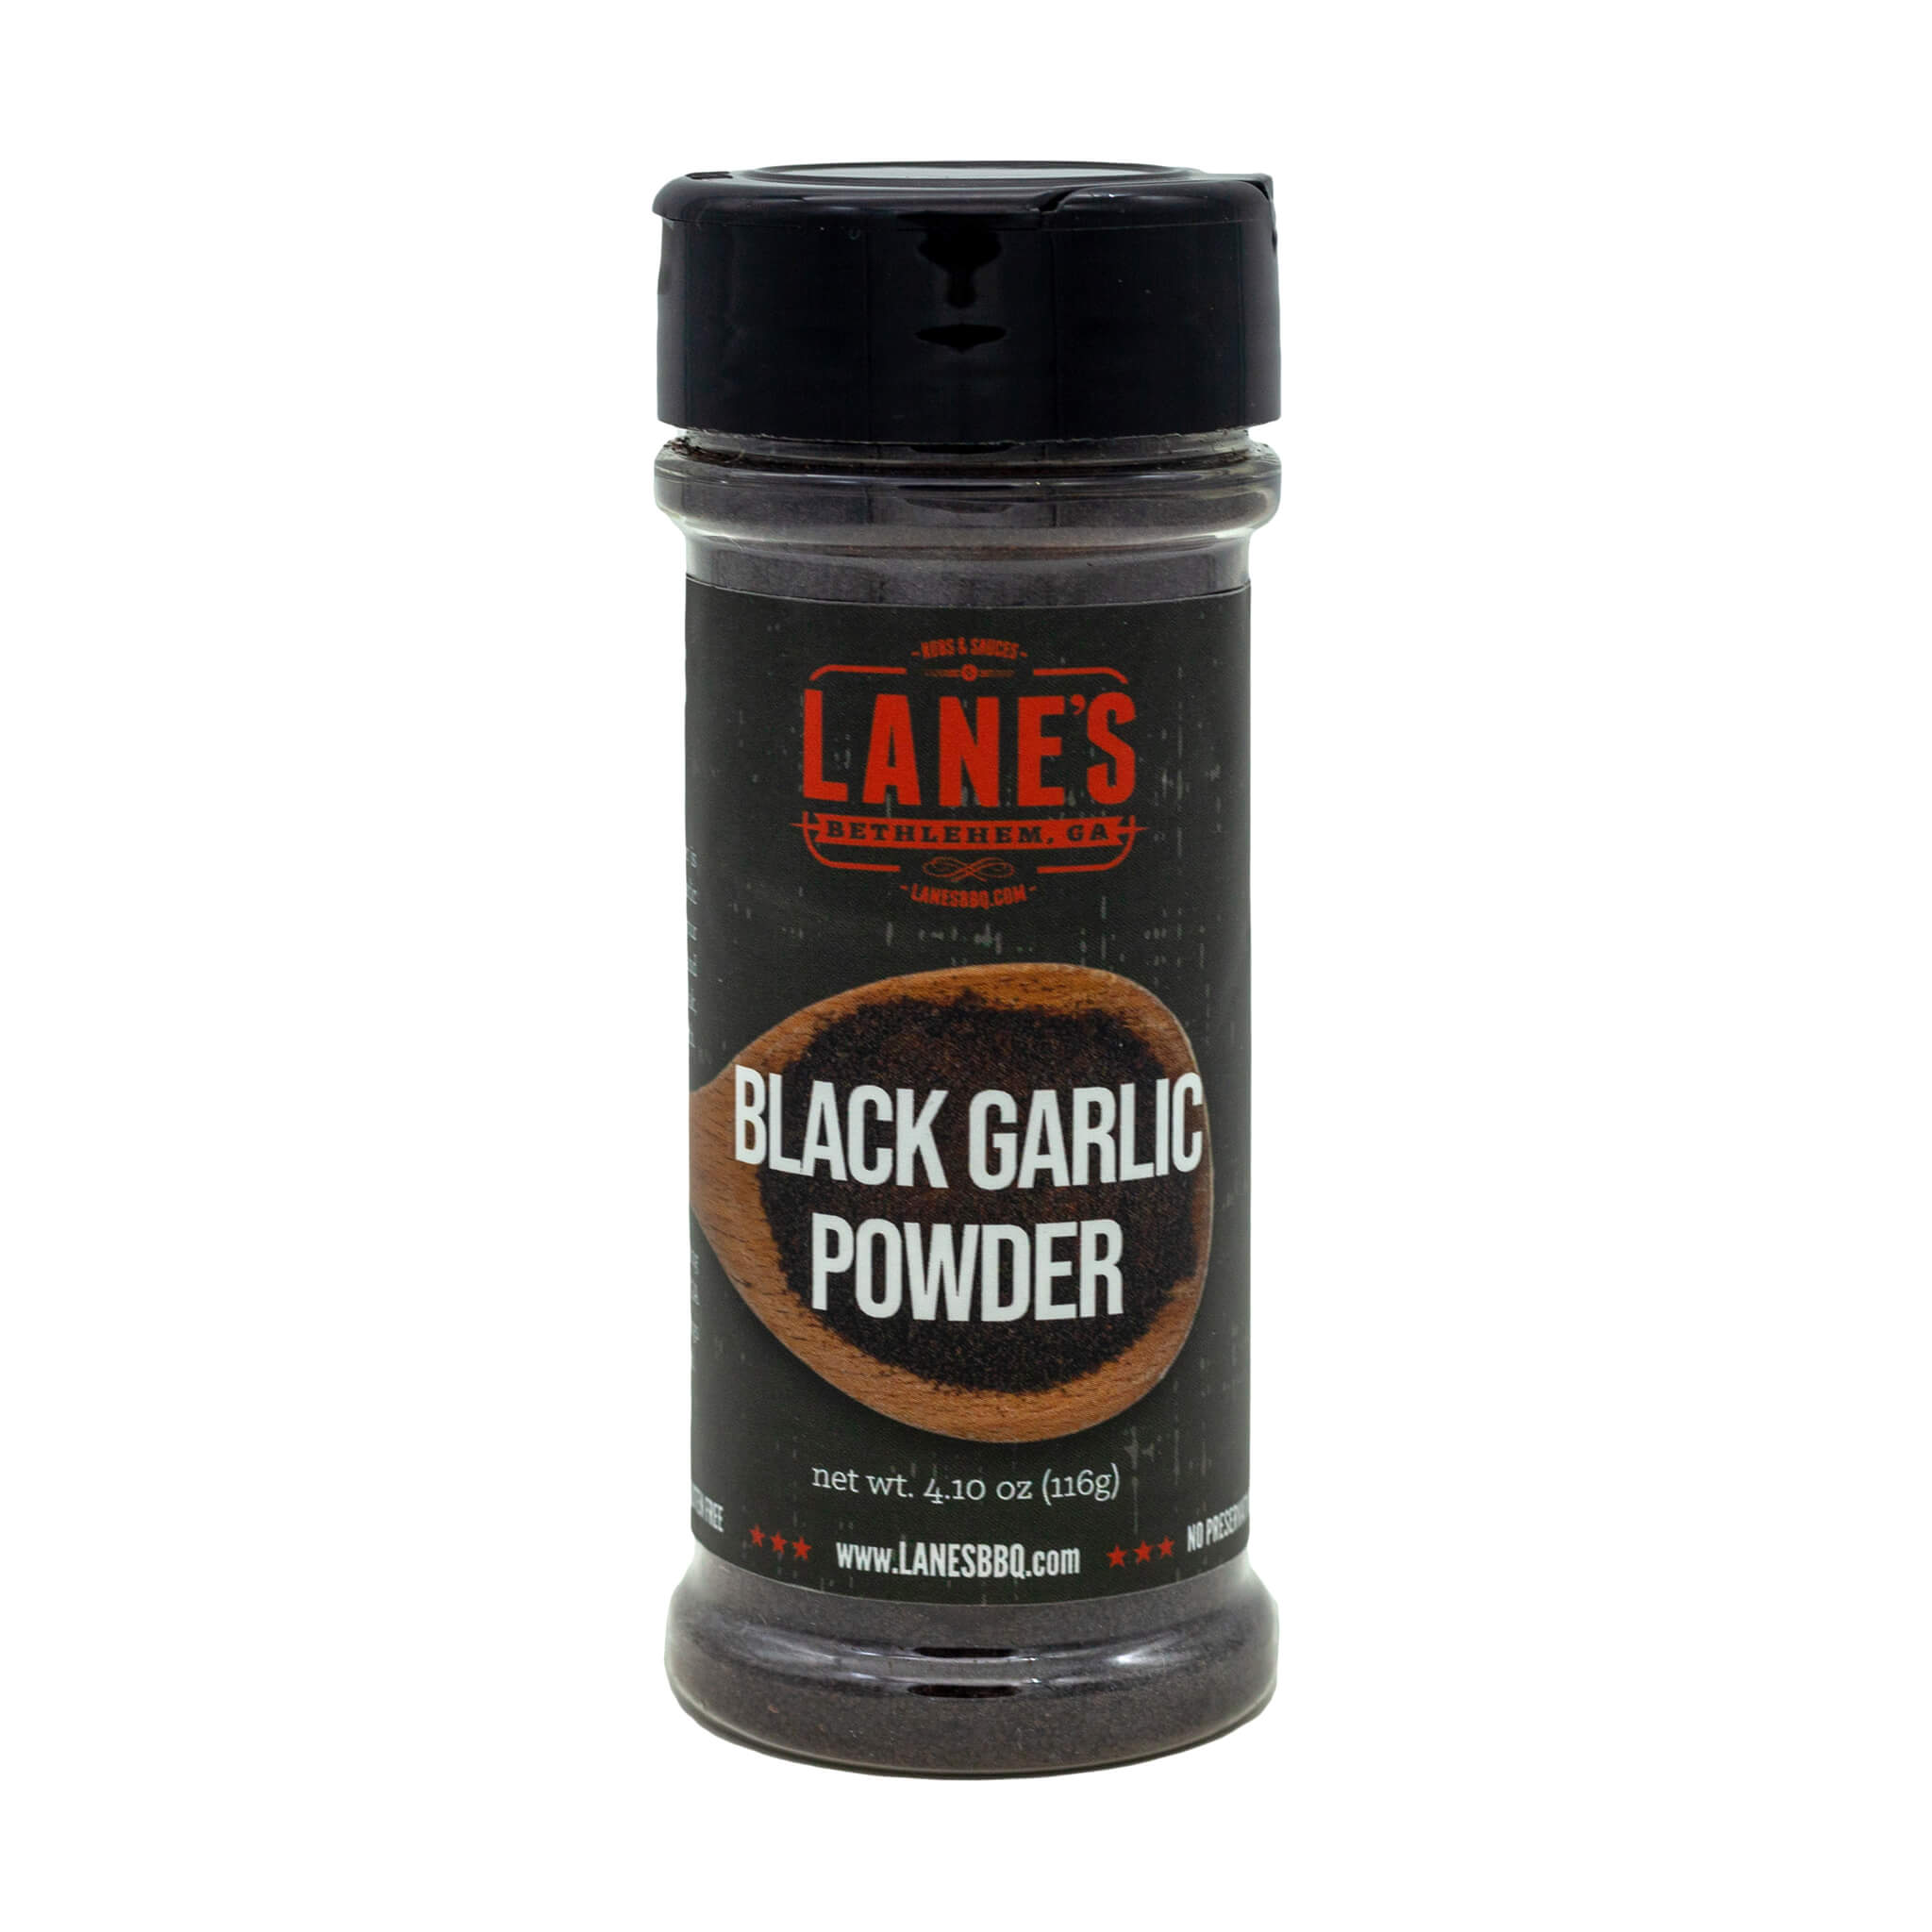 Black Garlic Powder